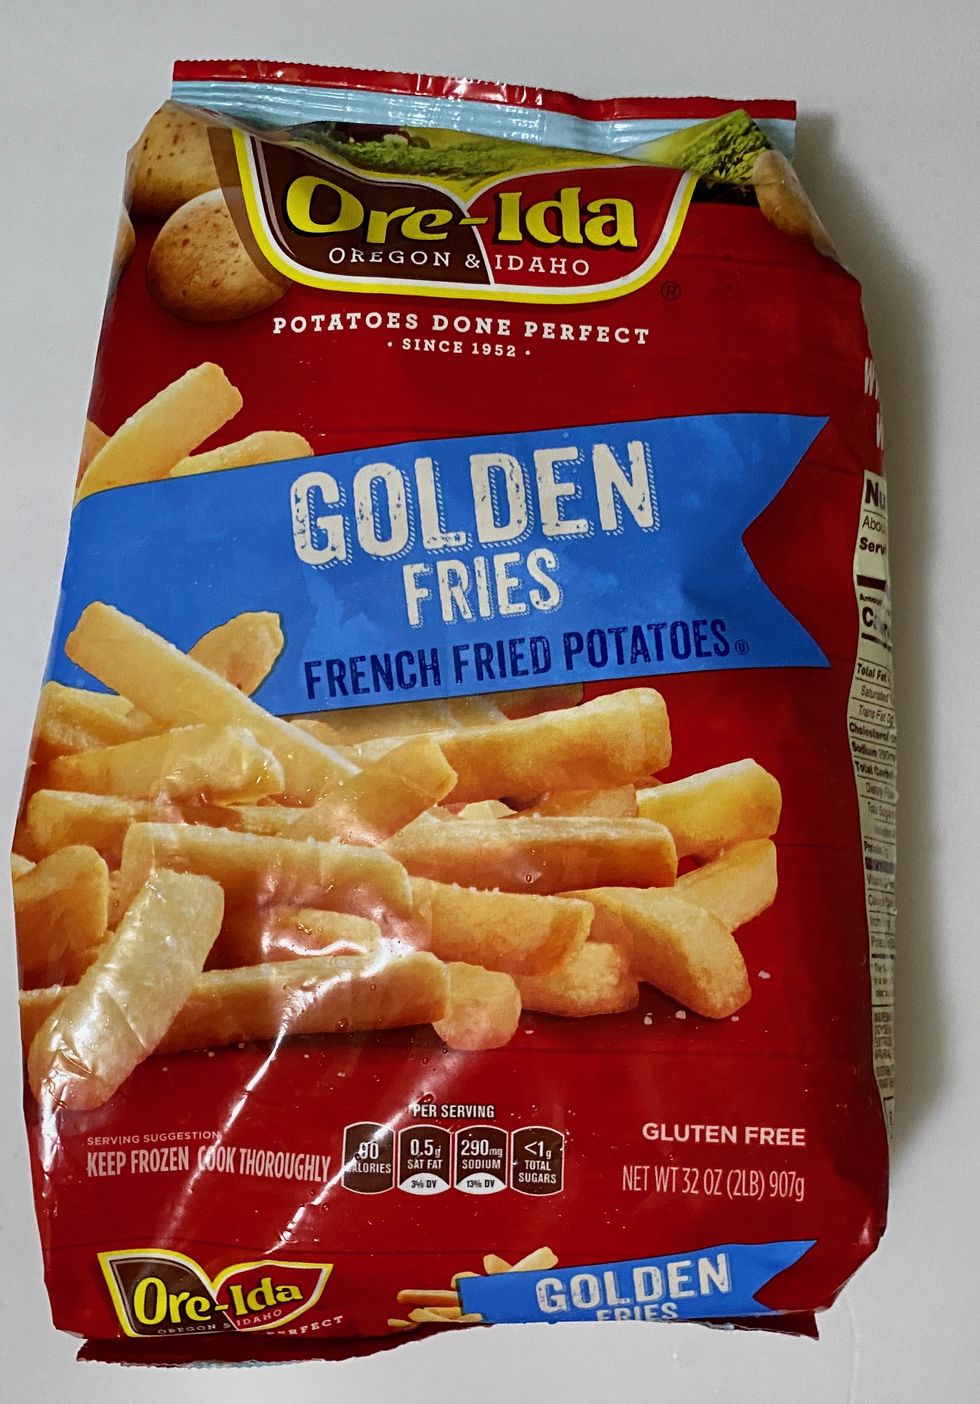 Ore Ida Extra Crispy Fast Food Fries